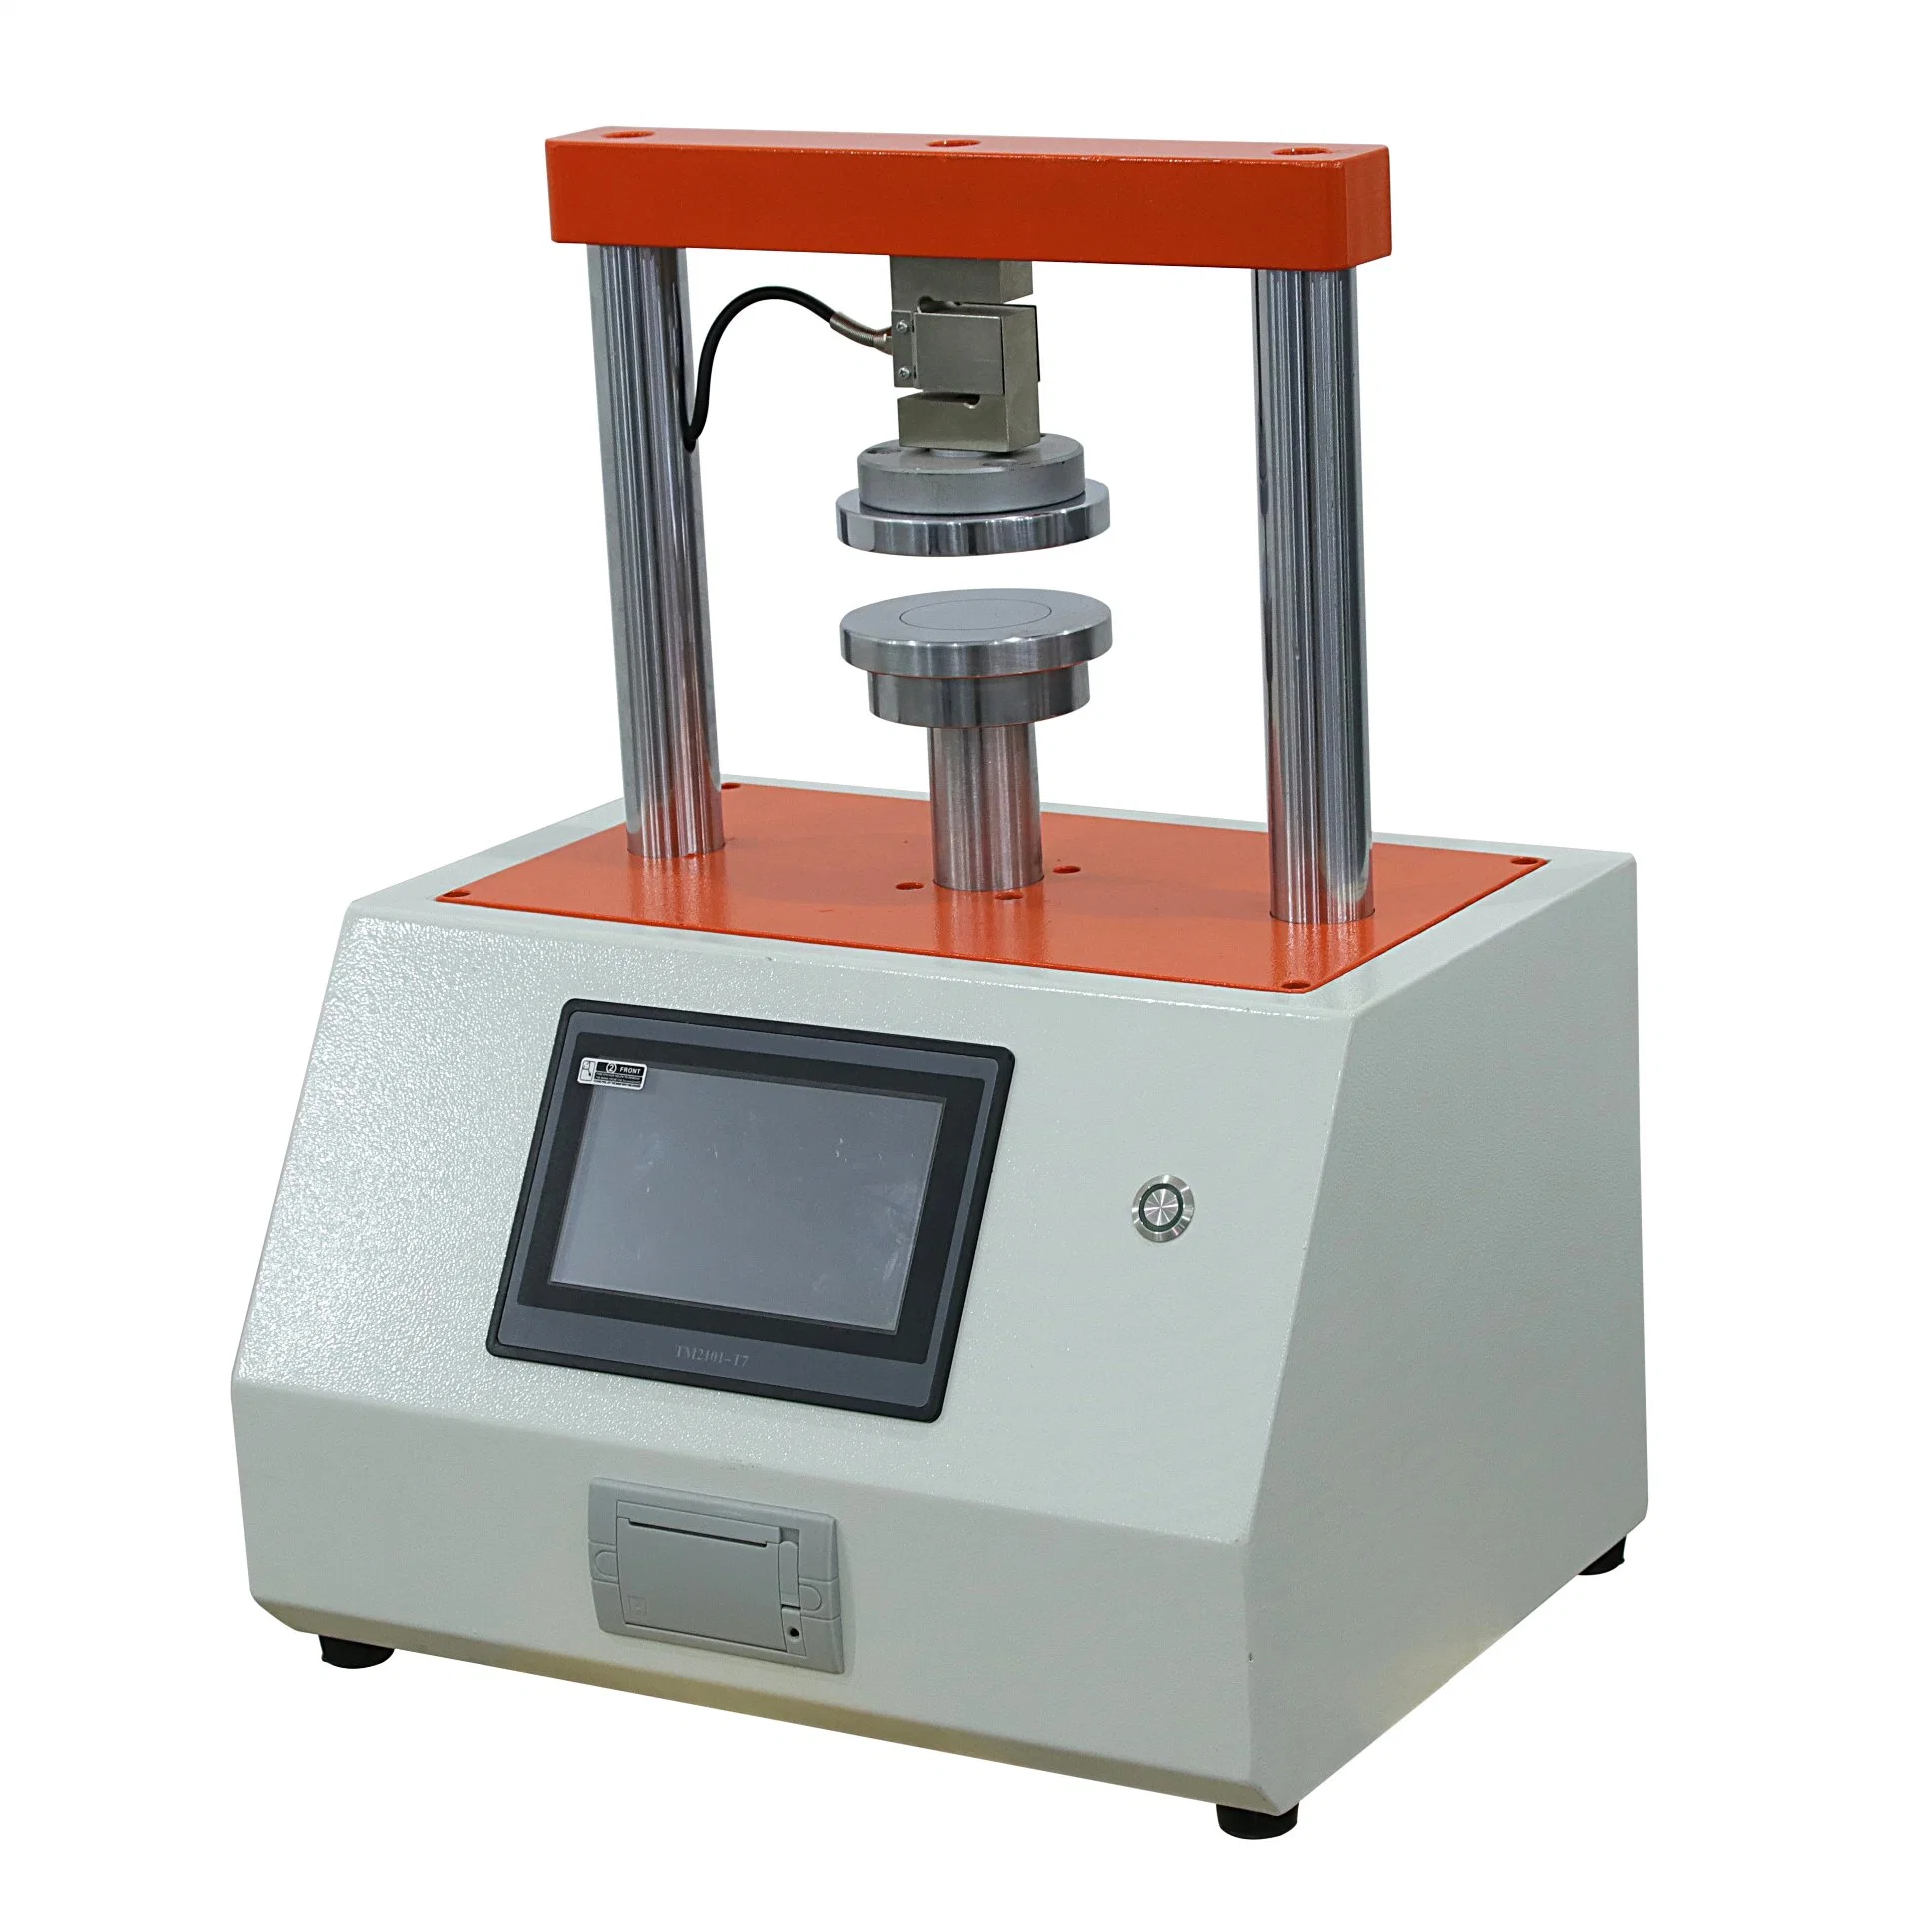 Machine automatique de test de résistance à la compression côté presse en carton ondulé / matériel de test / instrument de test / pour tester les produits papier